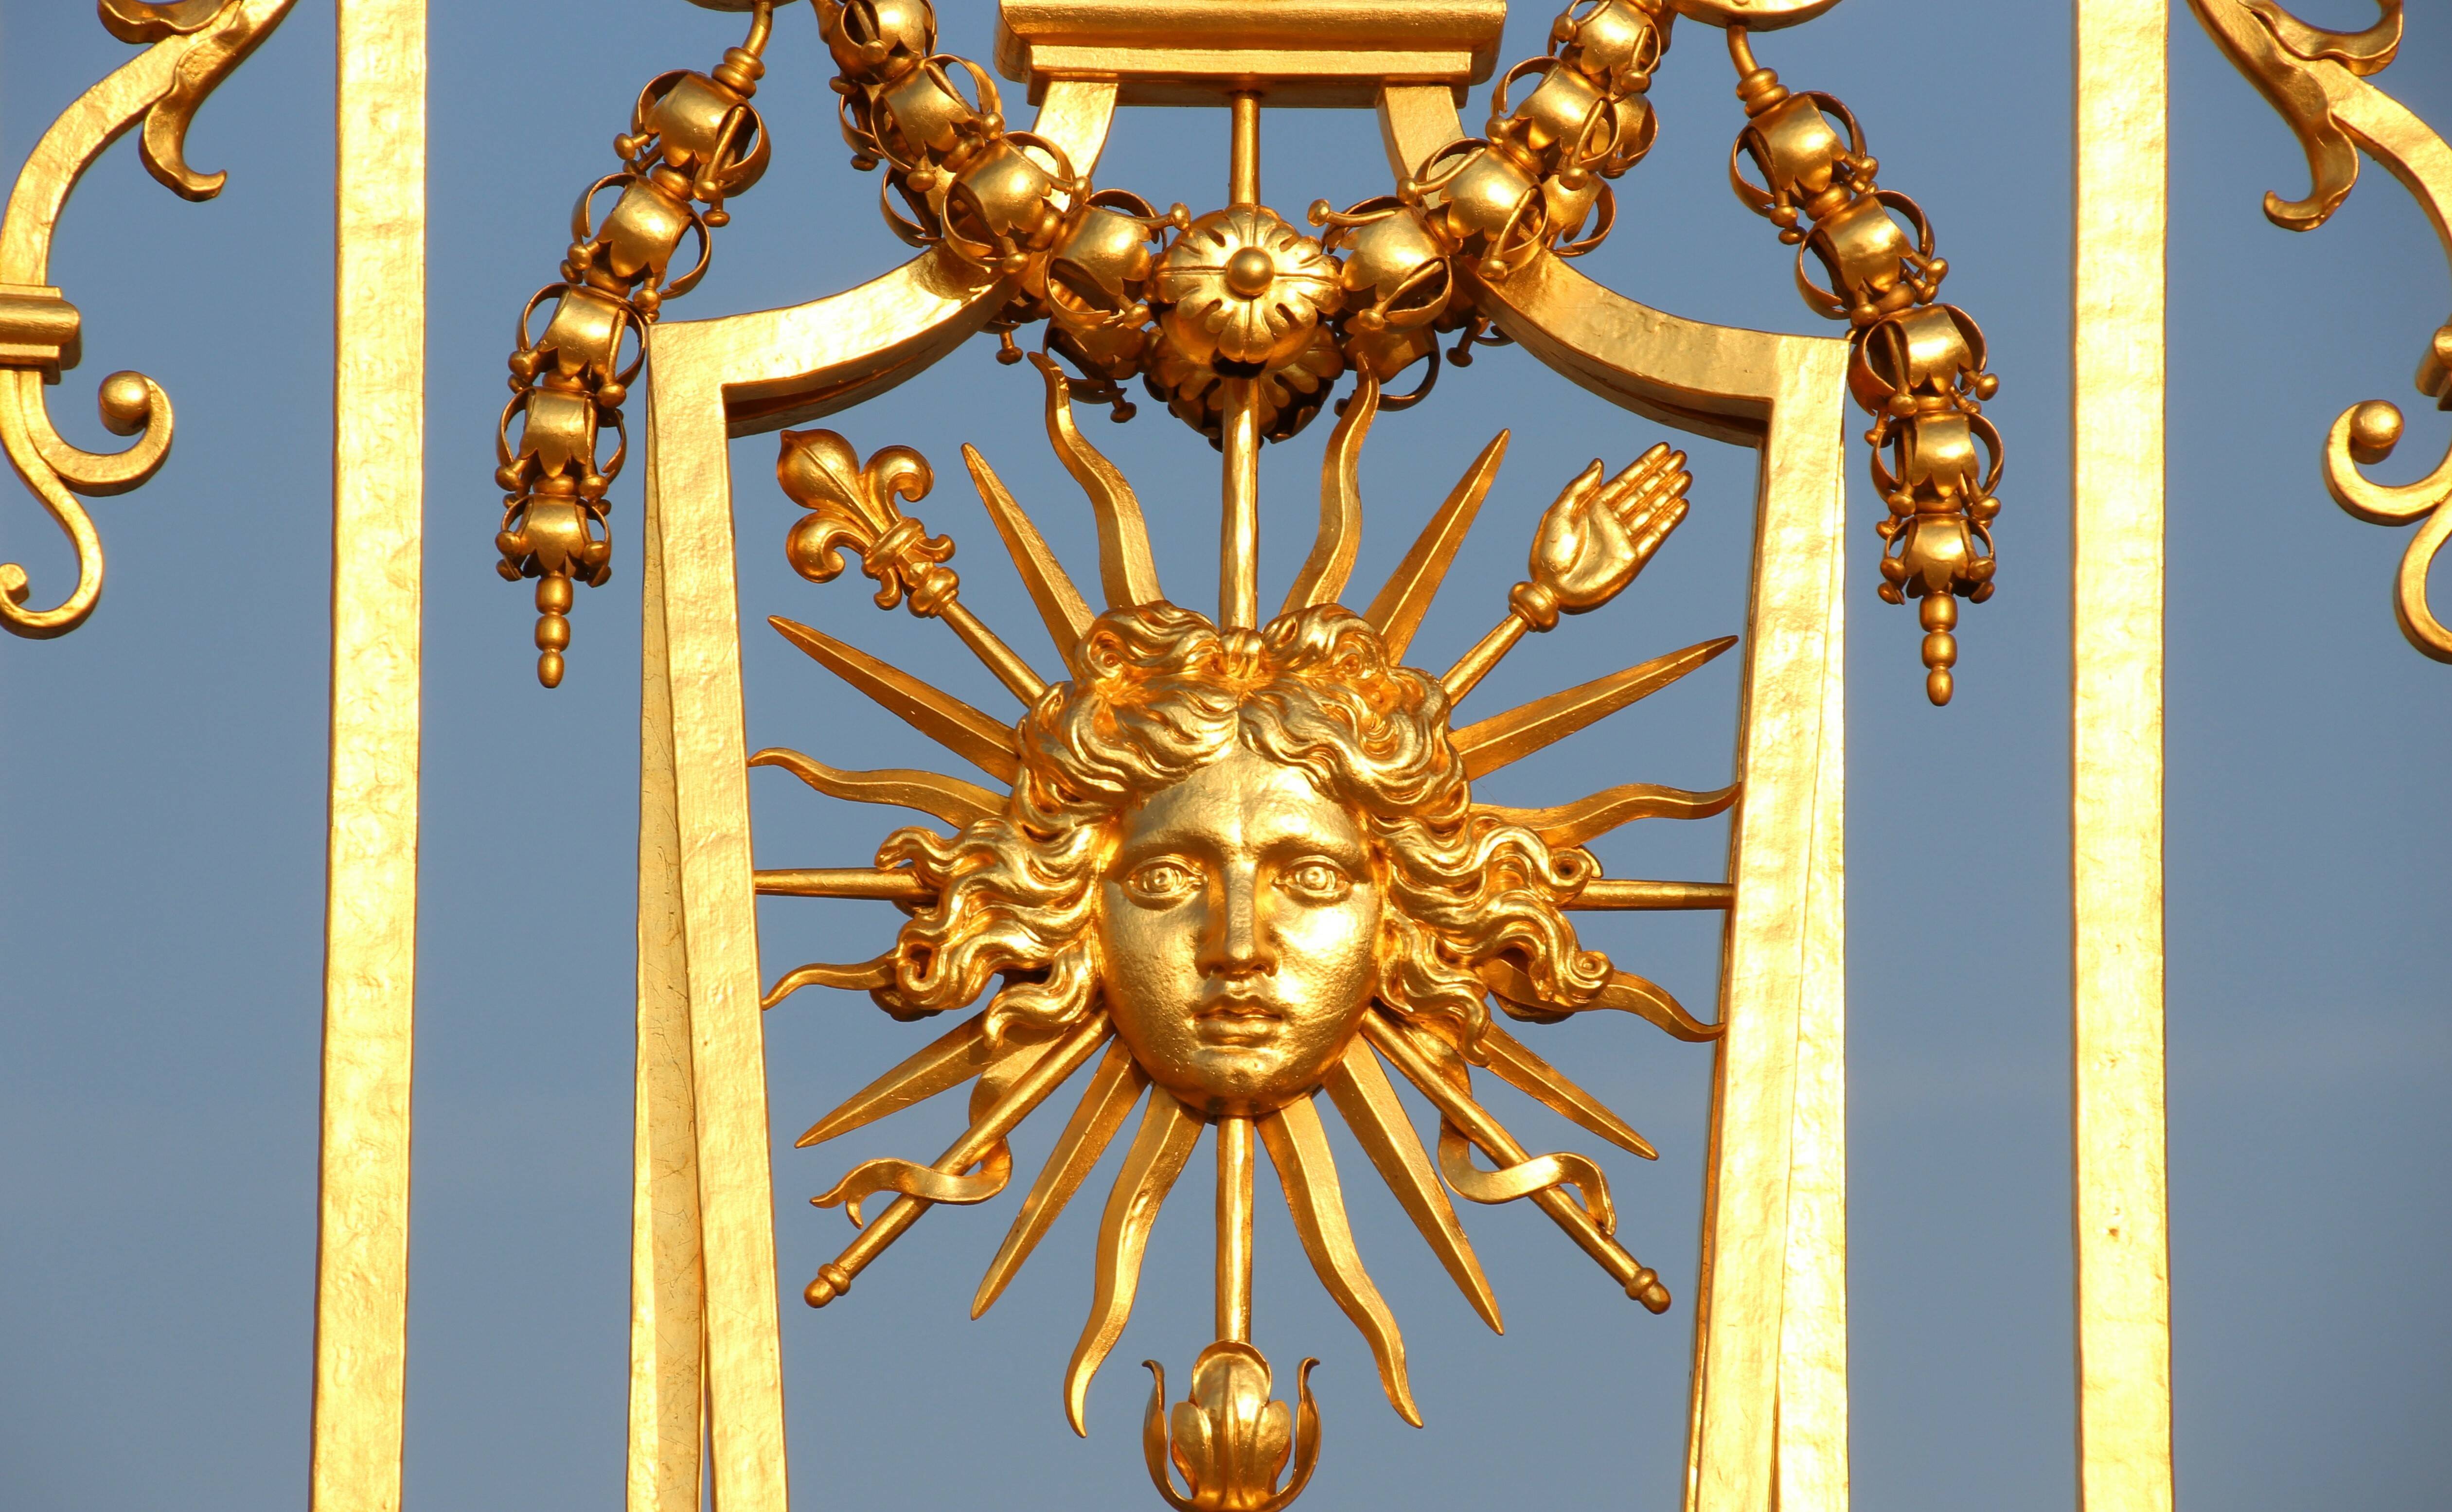 Эмблема короля-солнца с головой Аполлона, лучами и скипетром с французской лилией. Фрагмент ворот в Версале (фото: Lionel Allorge CC BY-SA 3.0)